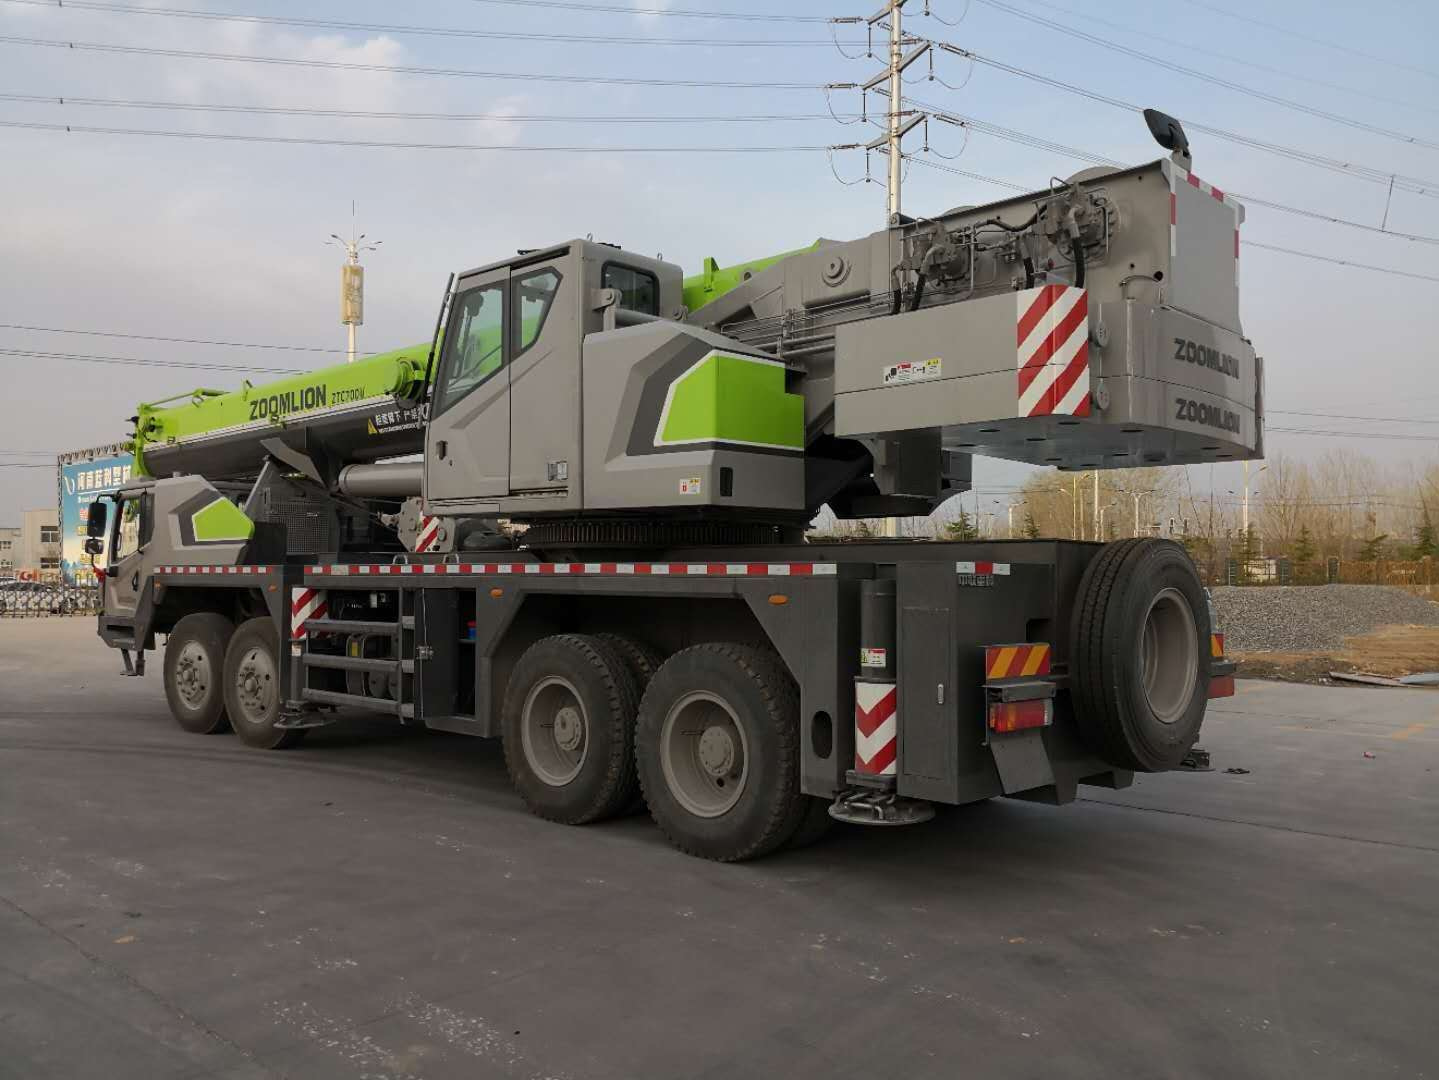 
                Zoomlion Nuova gru per camion di dimensioni medie da 70 tonnellate Ztc700h553 per Vendita
            